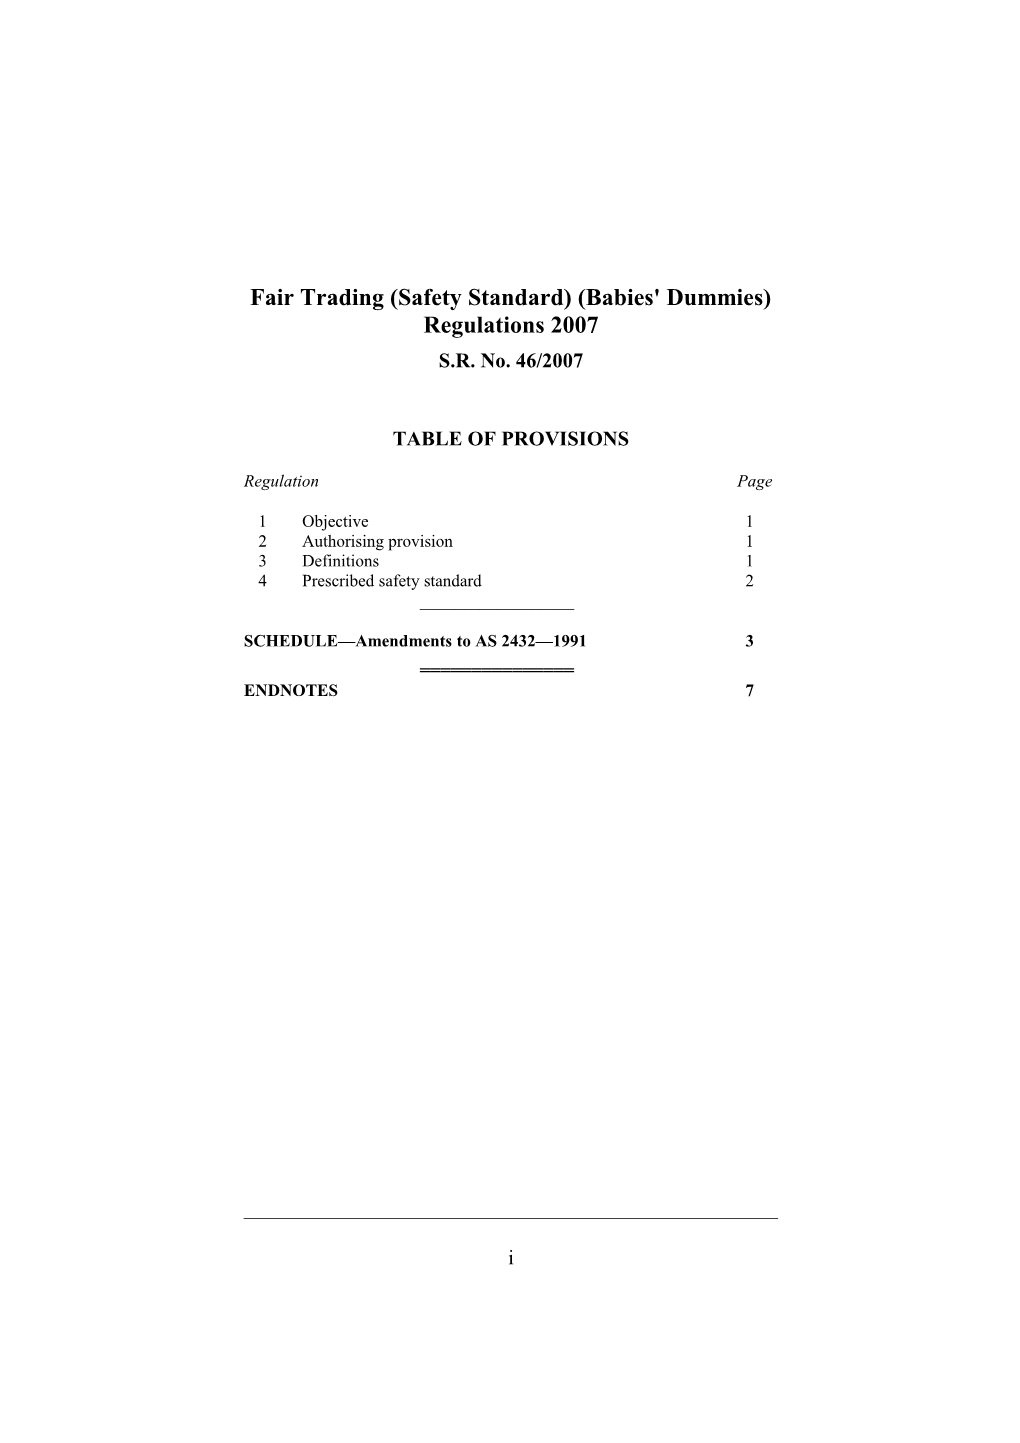 Fair Trading (Safety Standard) (Babies' Dummies) Regulations 2007